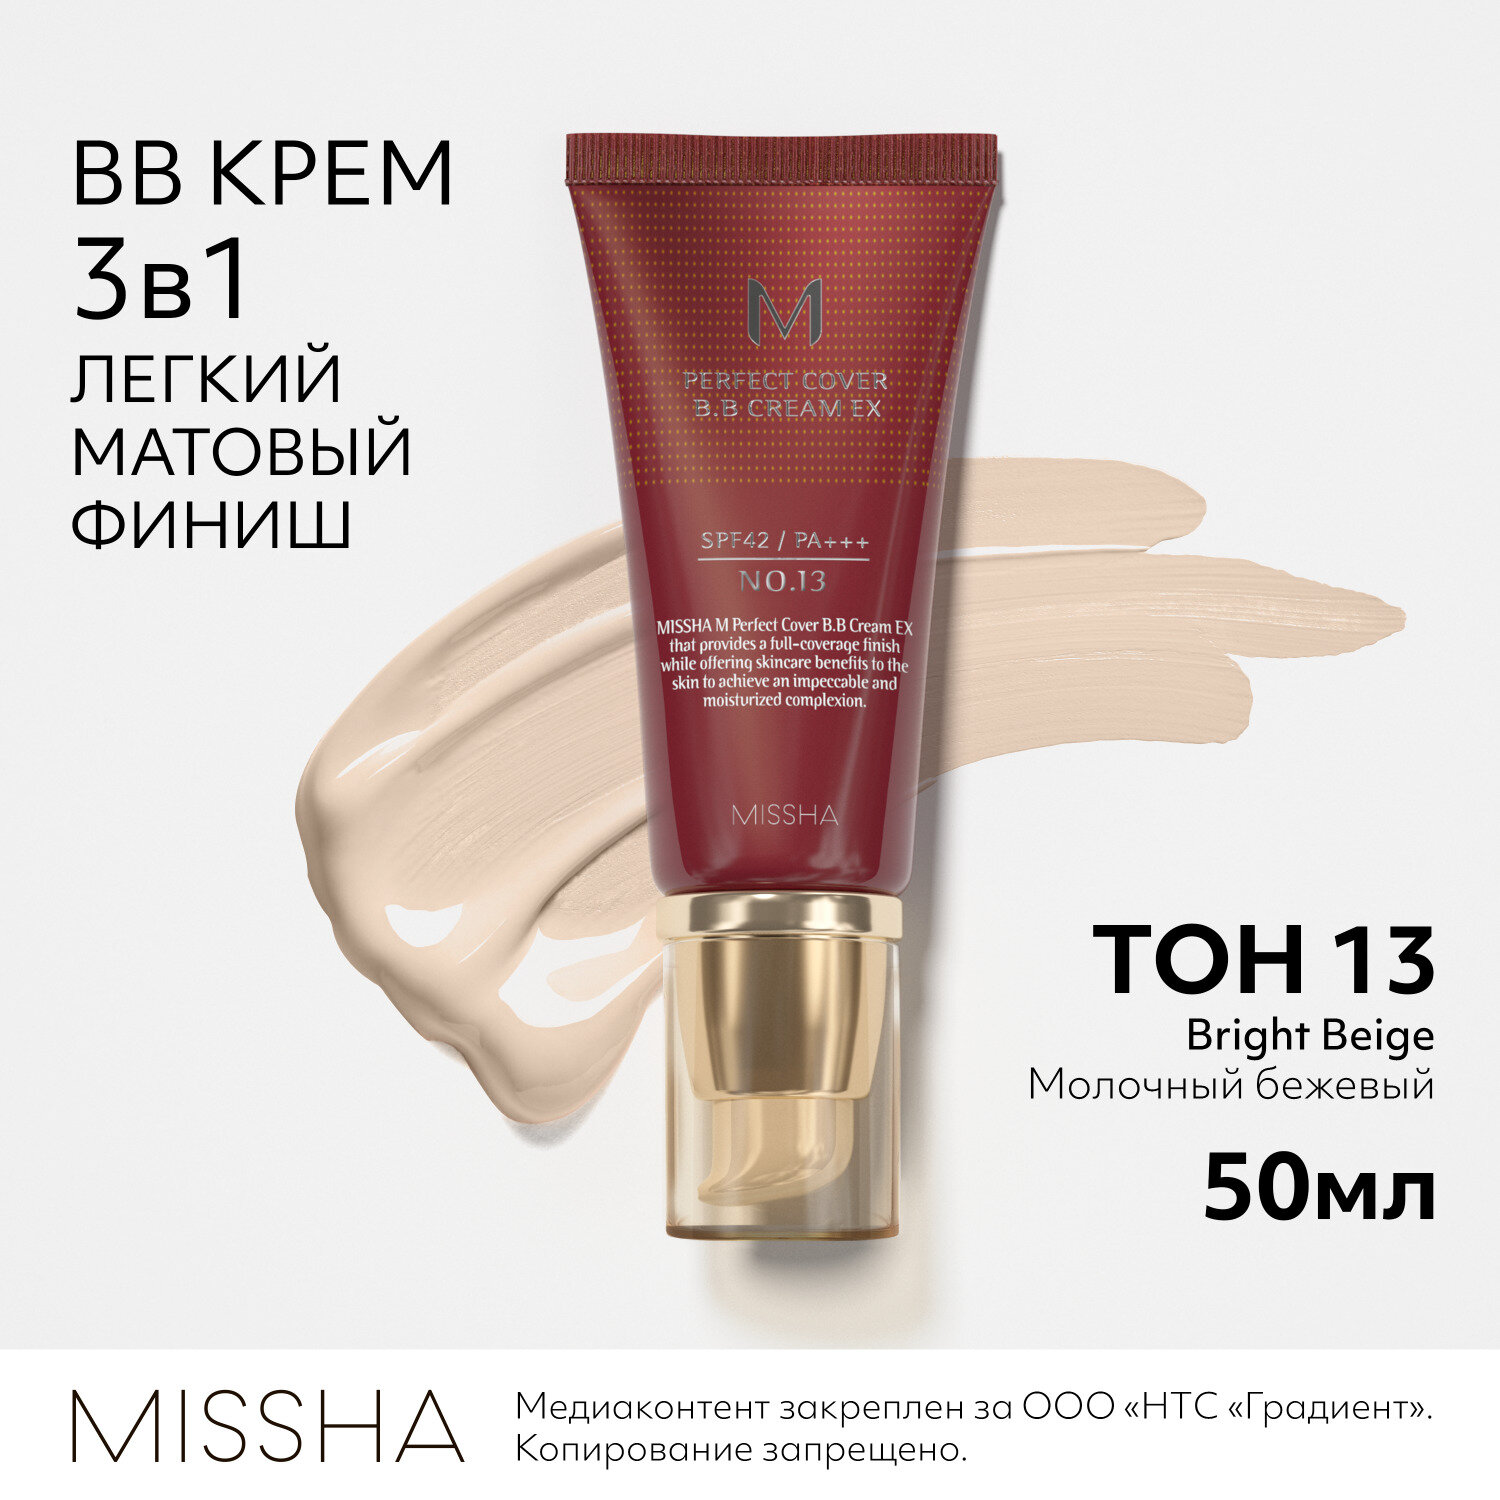 MISSHA тональный bb-крем для лица солнцезащитный #13 (50 мл.) M Perfect Cover BB Cream SPF42 PA+++ / Корейская косметика